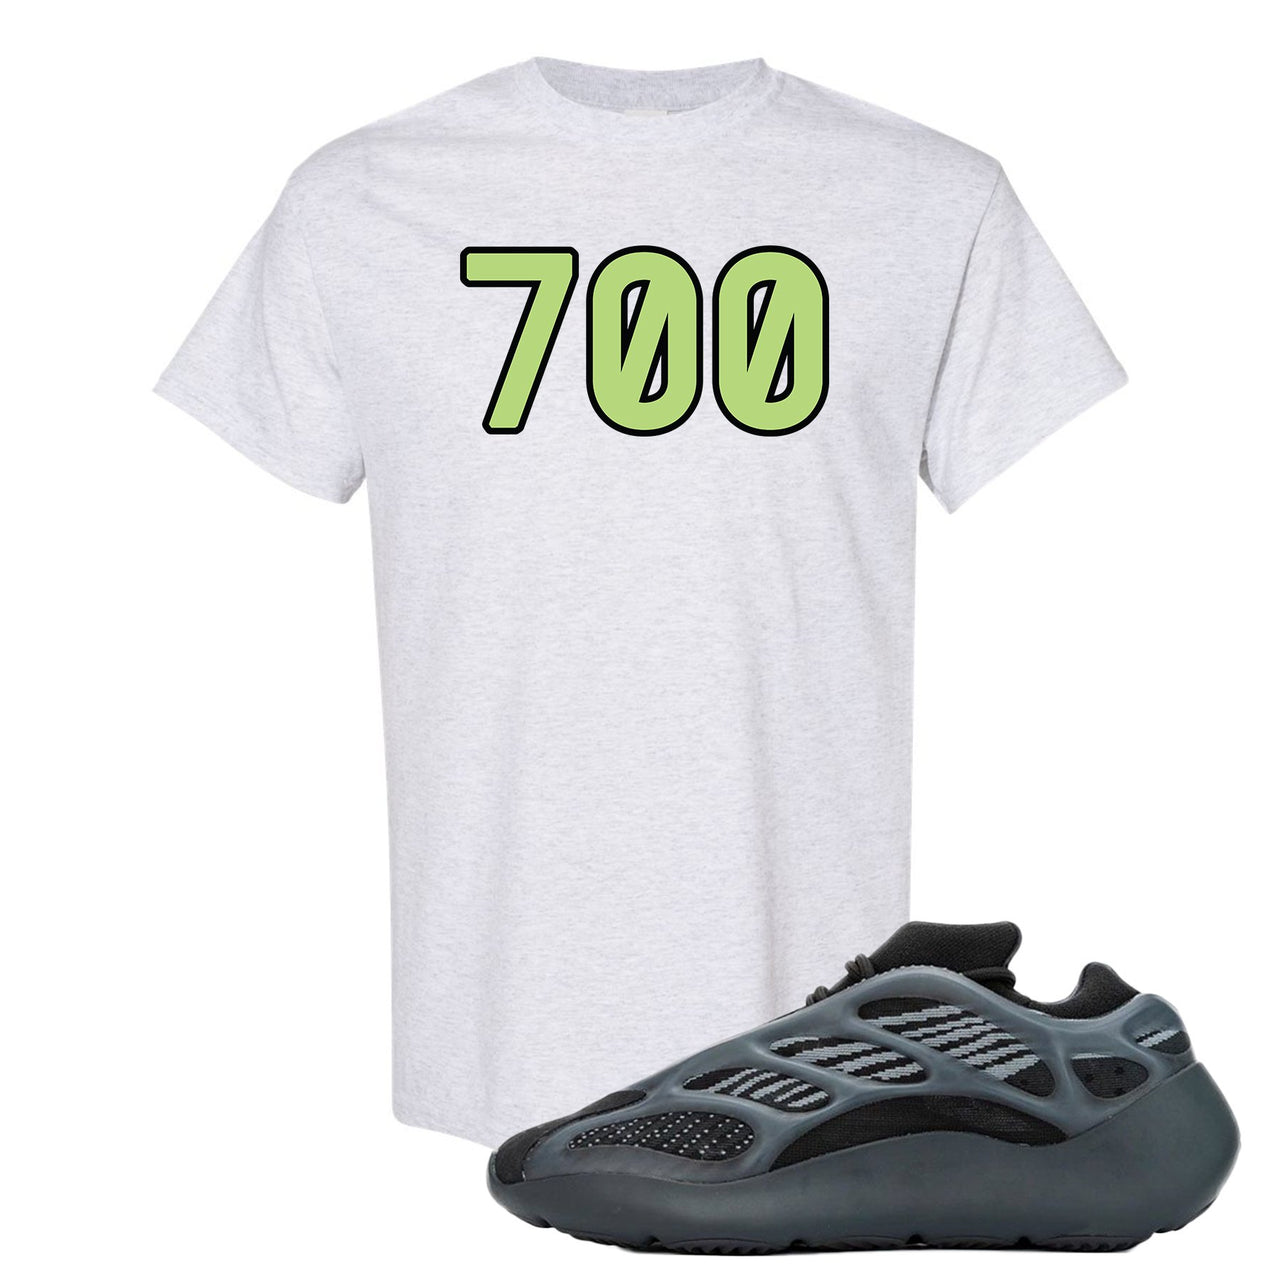 Alvah v3 700s T Shirt | 700 Logo, Ash